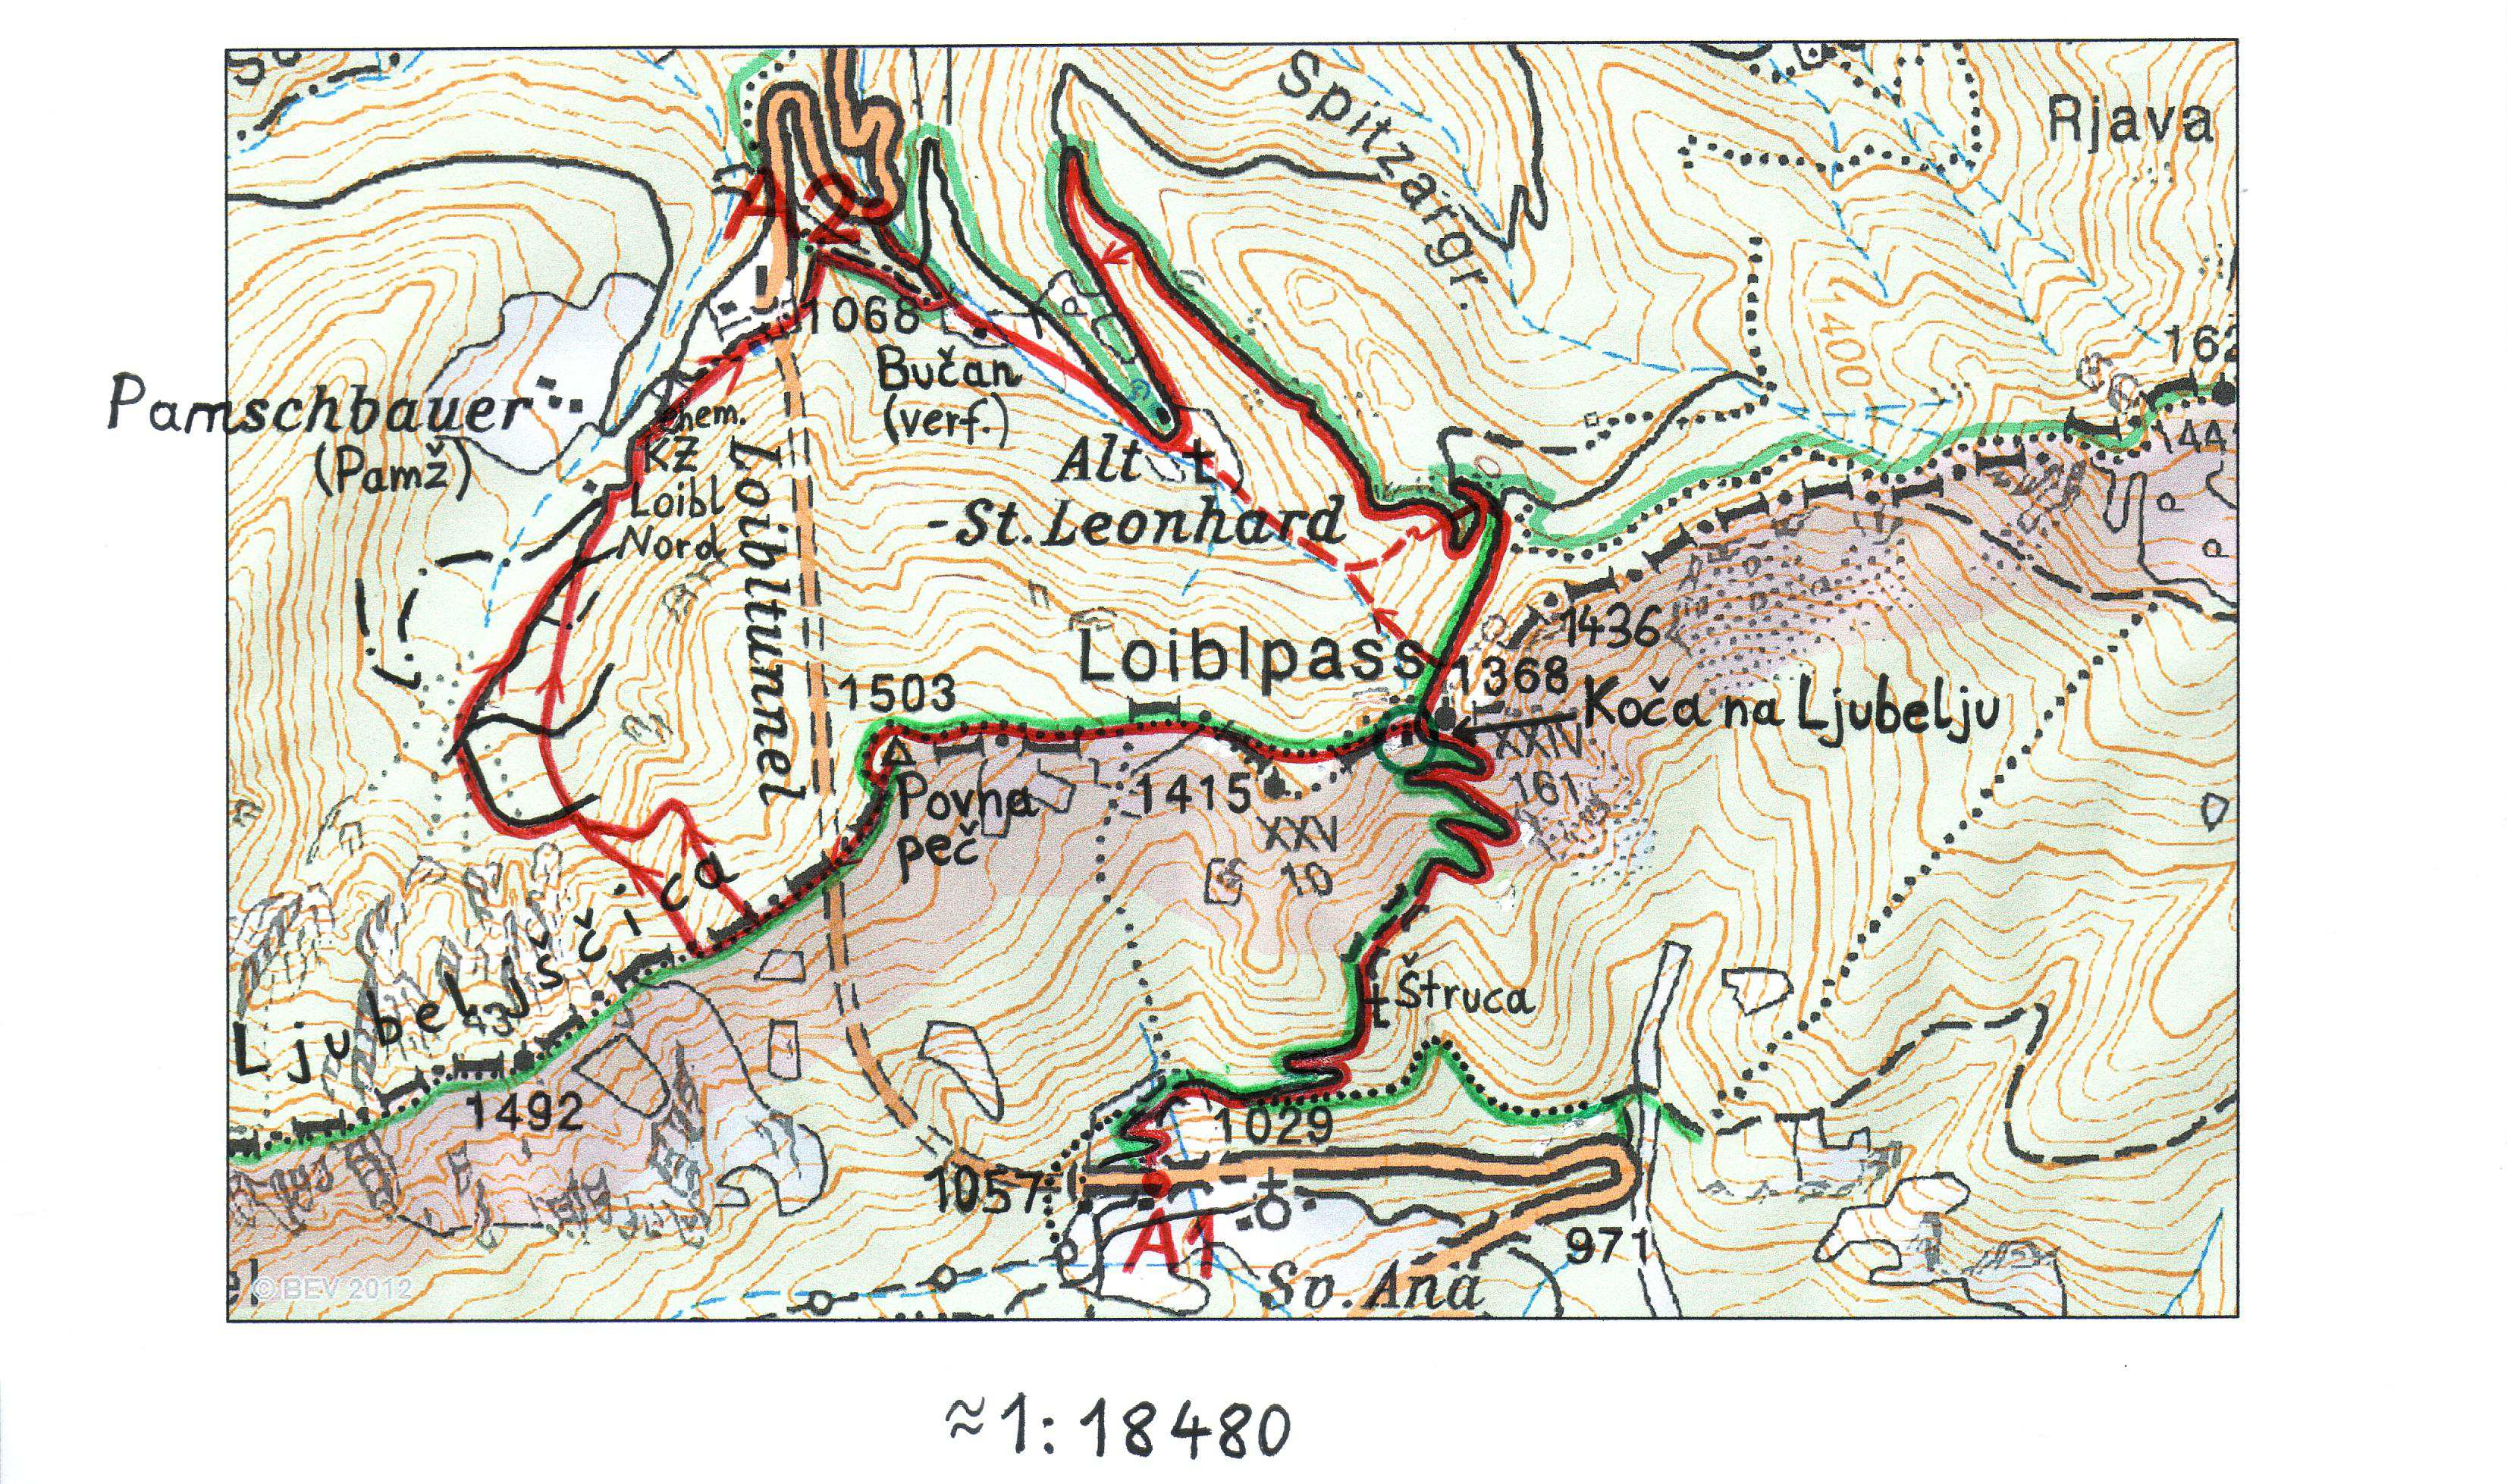 Skitour Povna peč (Polna peč, Ravna peč, Rovna peč), 1503 m Karawanken - Hochstuhl-Gruppe Legende (ÖK): rote Linie = Skitour; rot strichlierte Linie = Variante; roter Pfeil = empfohlene Richtung;